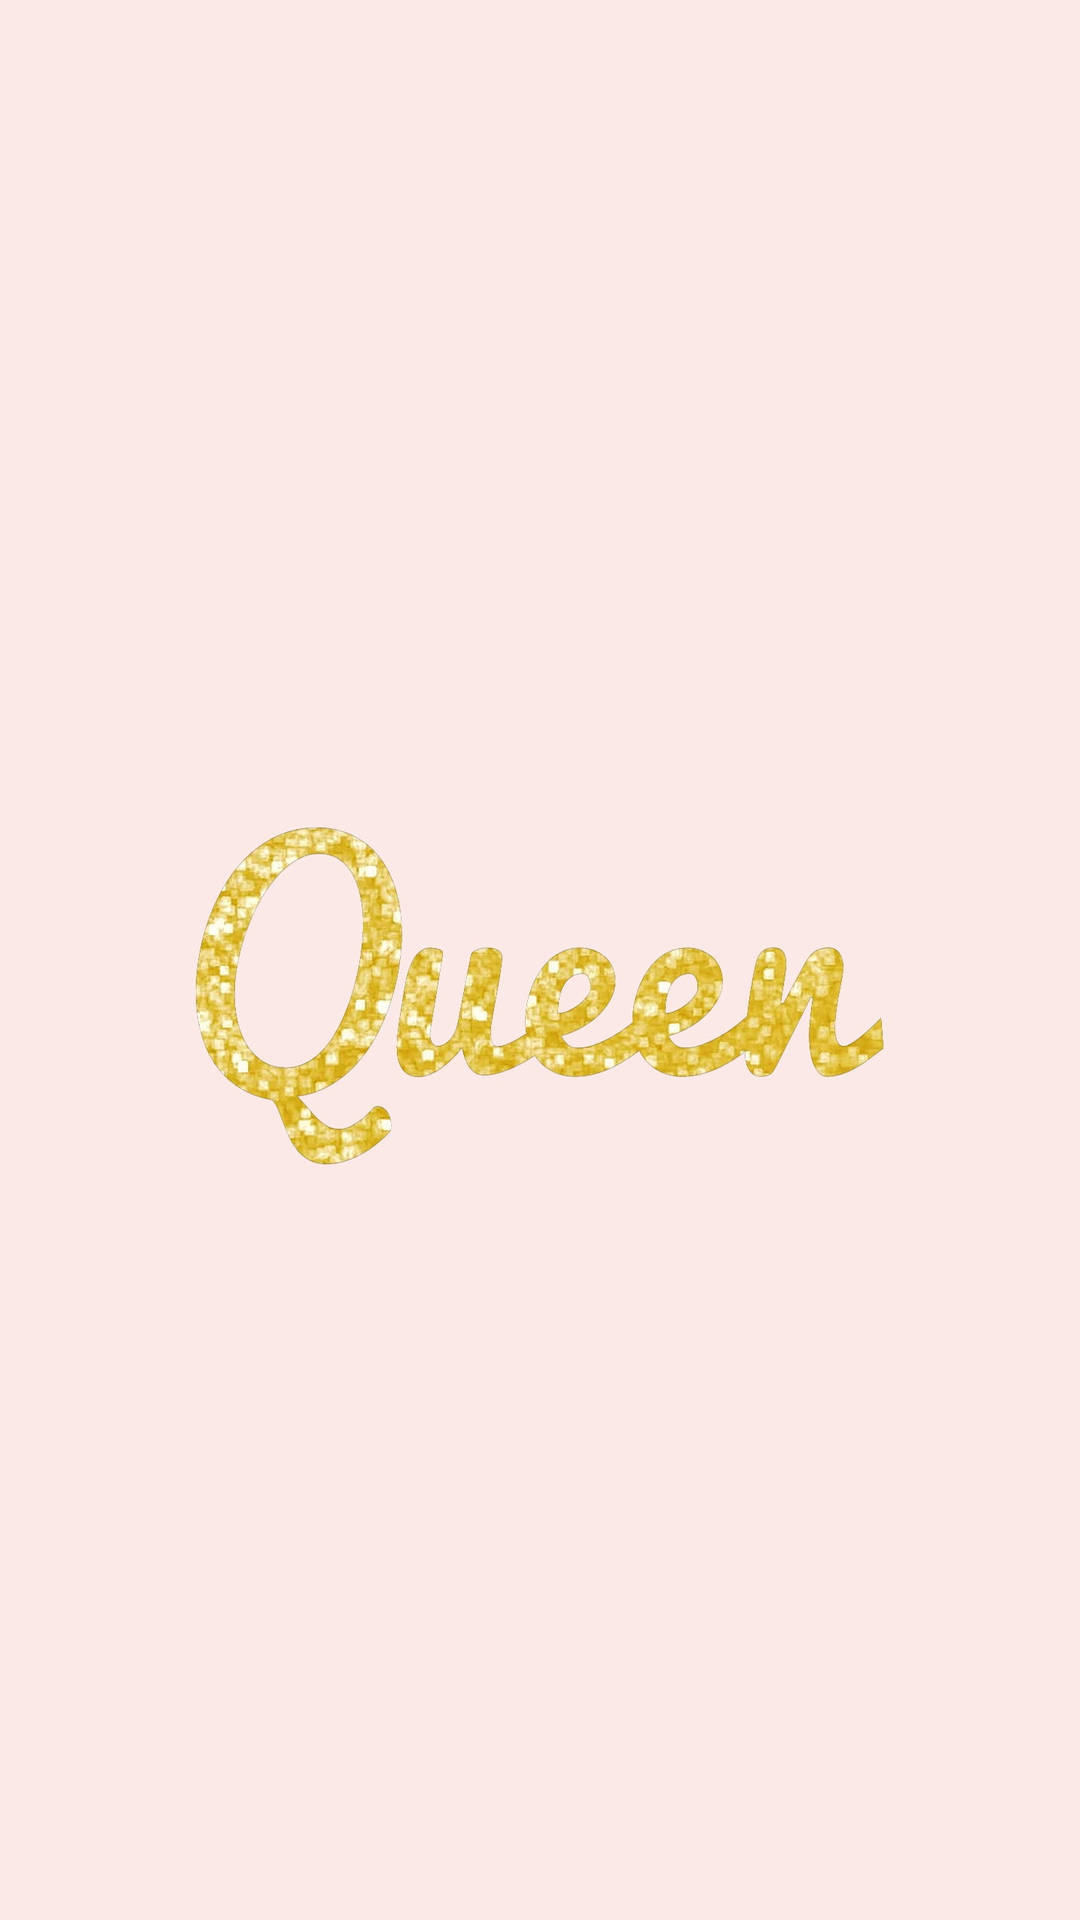 Gold Glitter Queen Girly